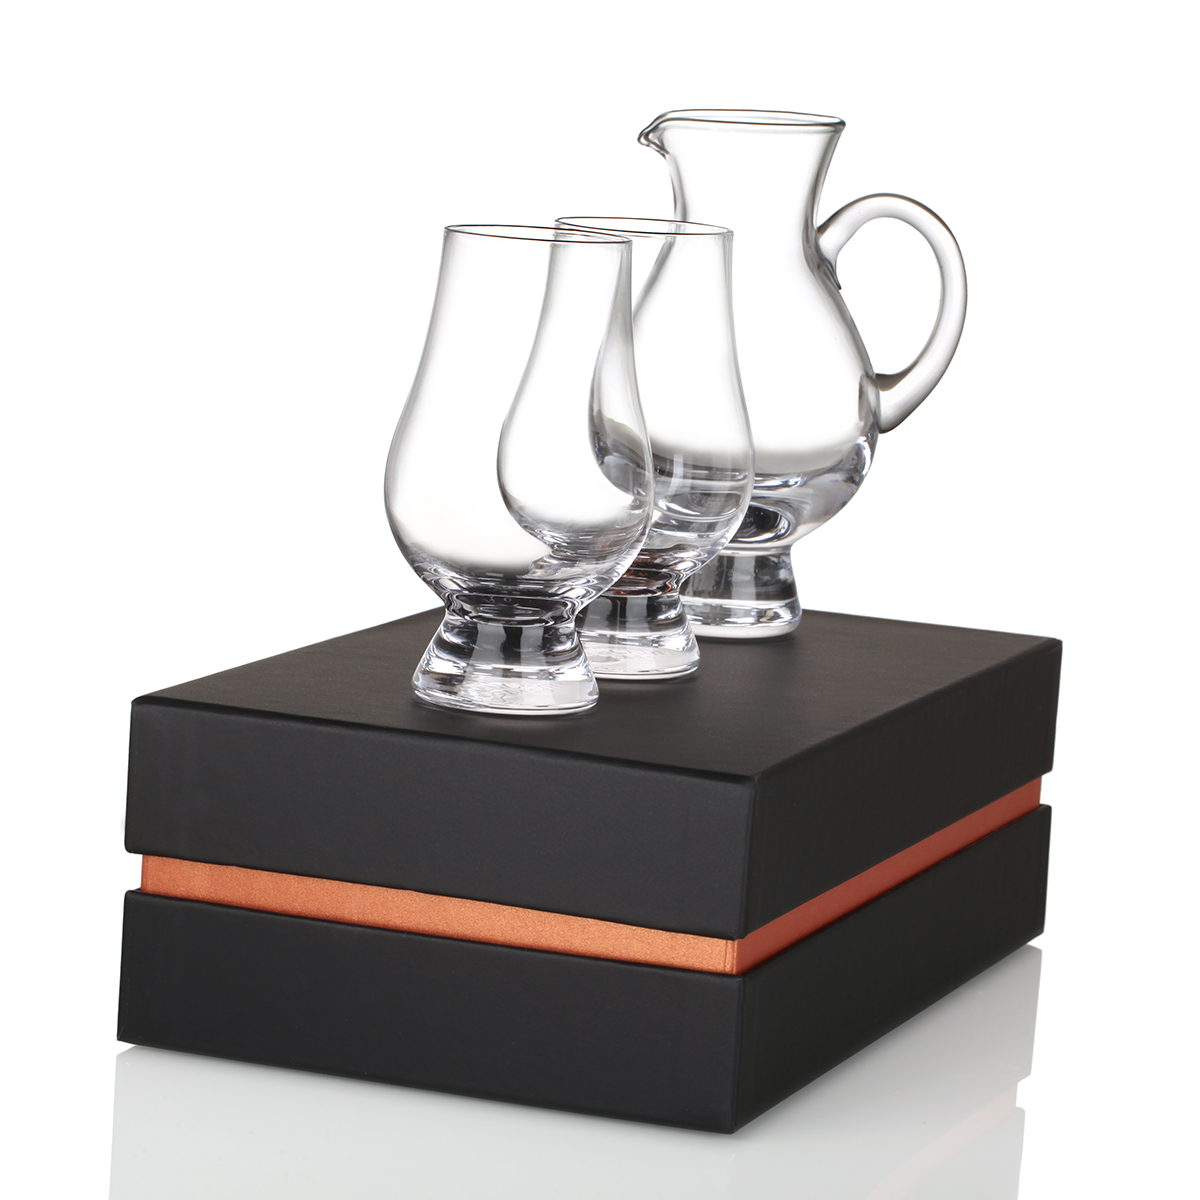 Glencairn Luxus Tasting Set - 2 Whisky Gläser & Wasserkrug im Geschenkkarton